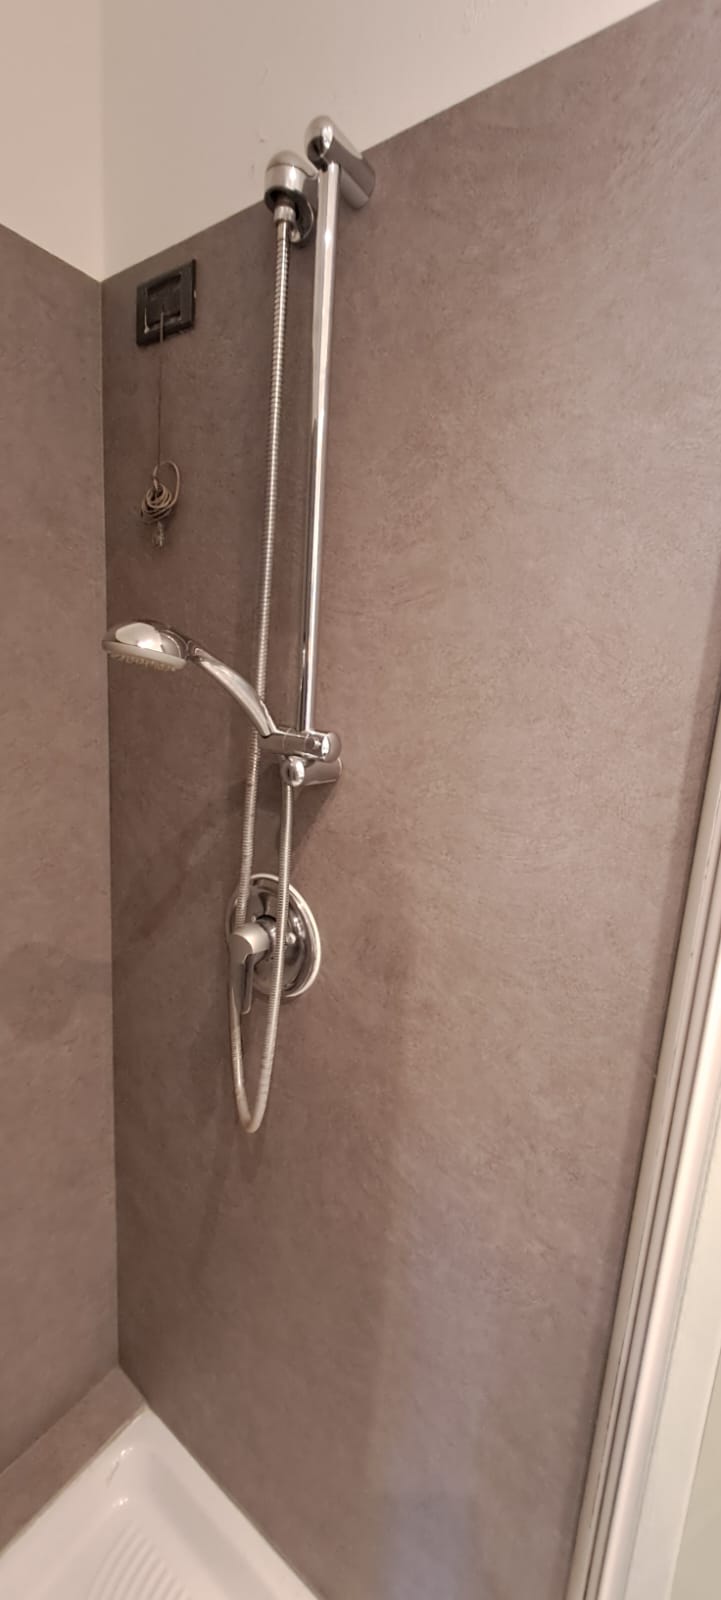 Ristrutturazione intero bagno: arredo pareti e interno doccia – Legnano